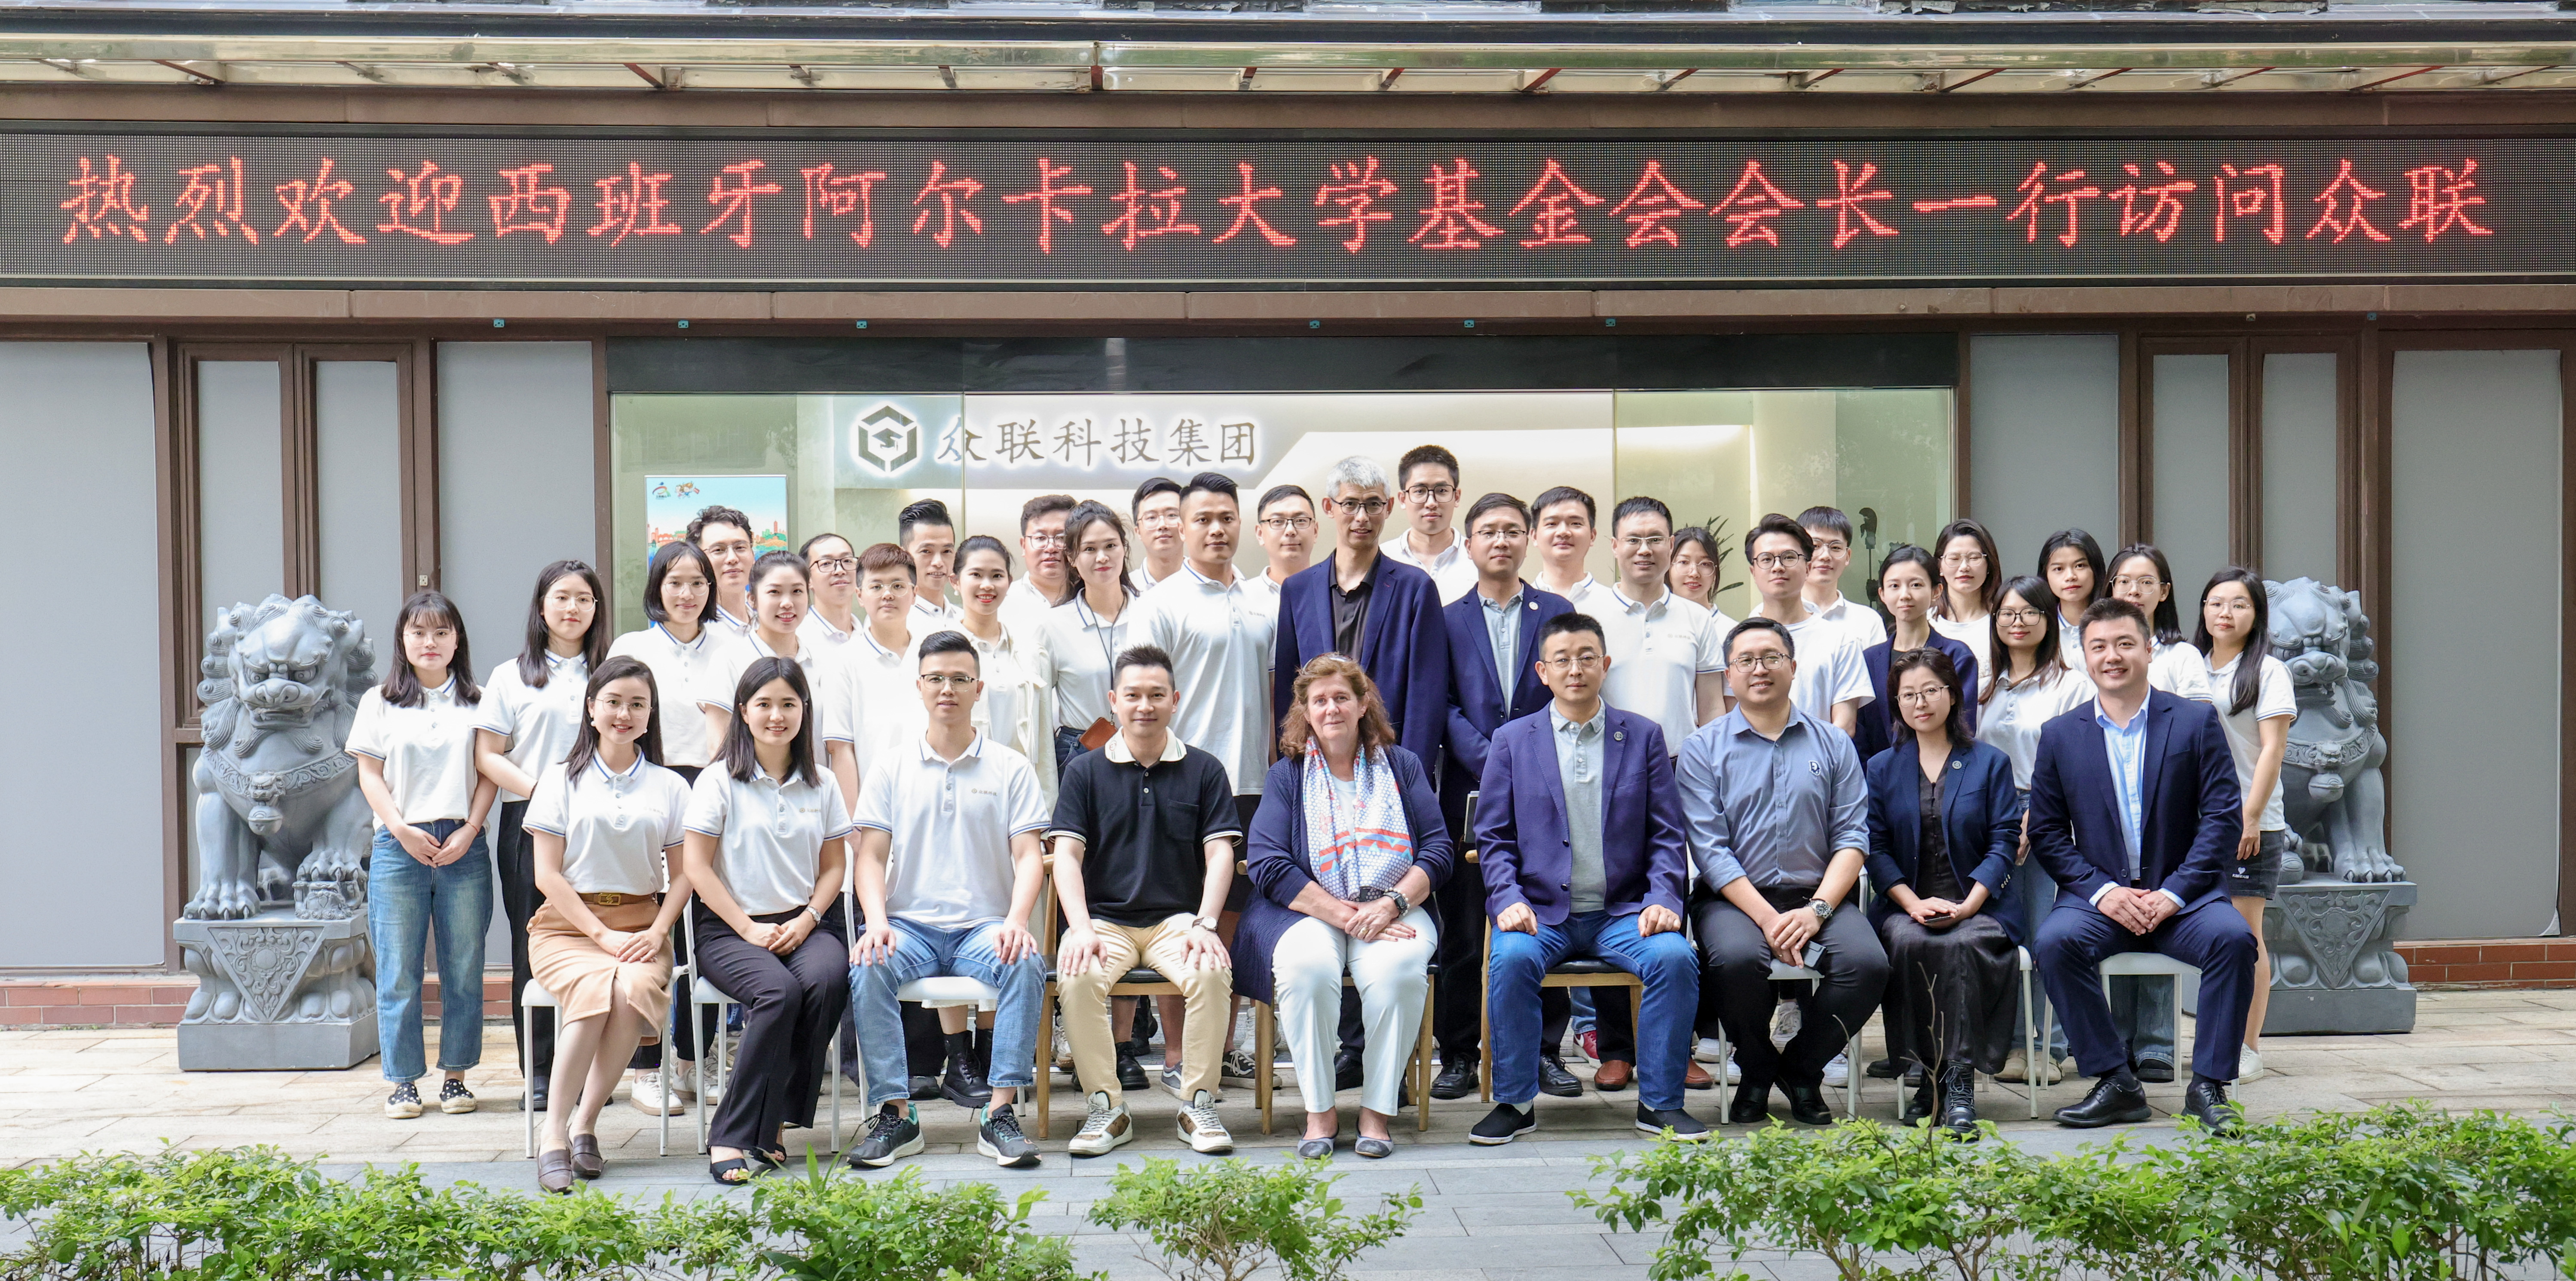 众联教育&阿尔卡拉大学管理学硕士研究生项目—中国推广中心授牌